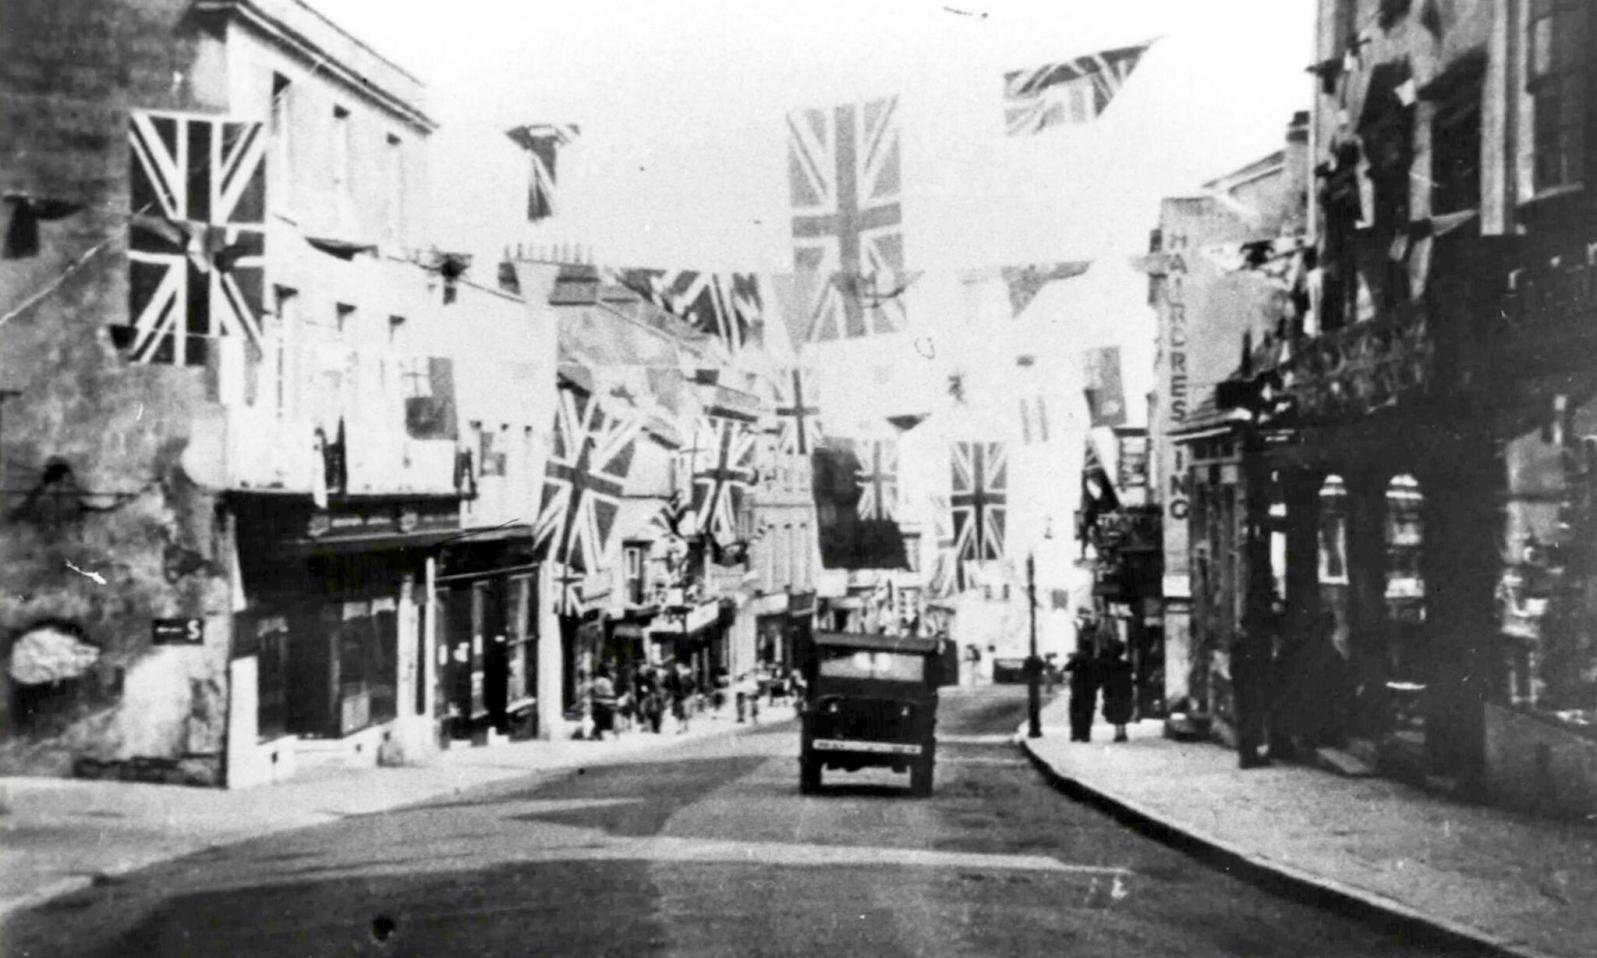 VE Day 1945 in Lyme Regis